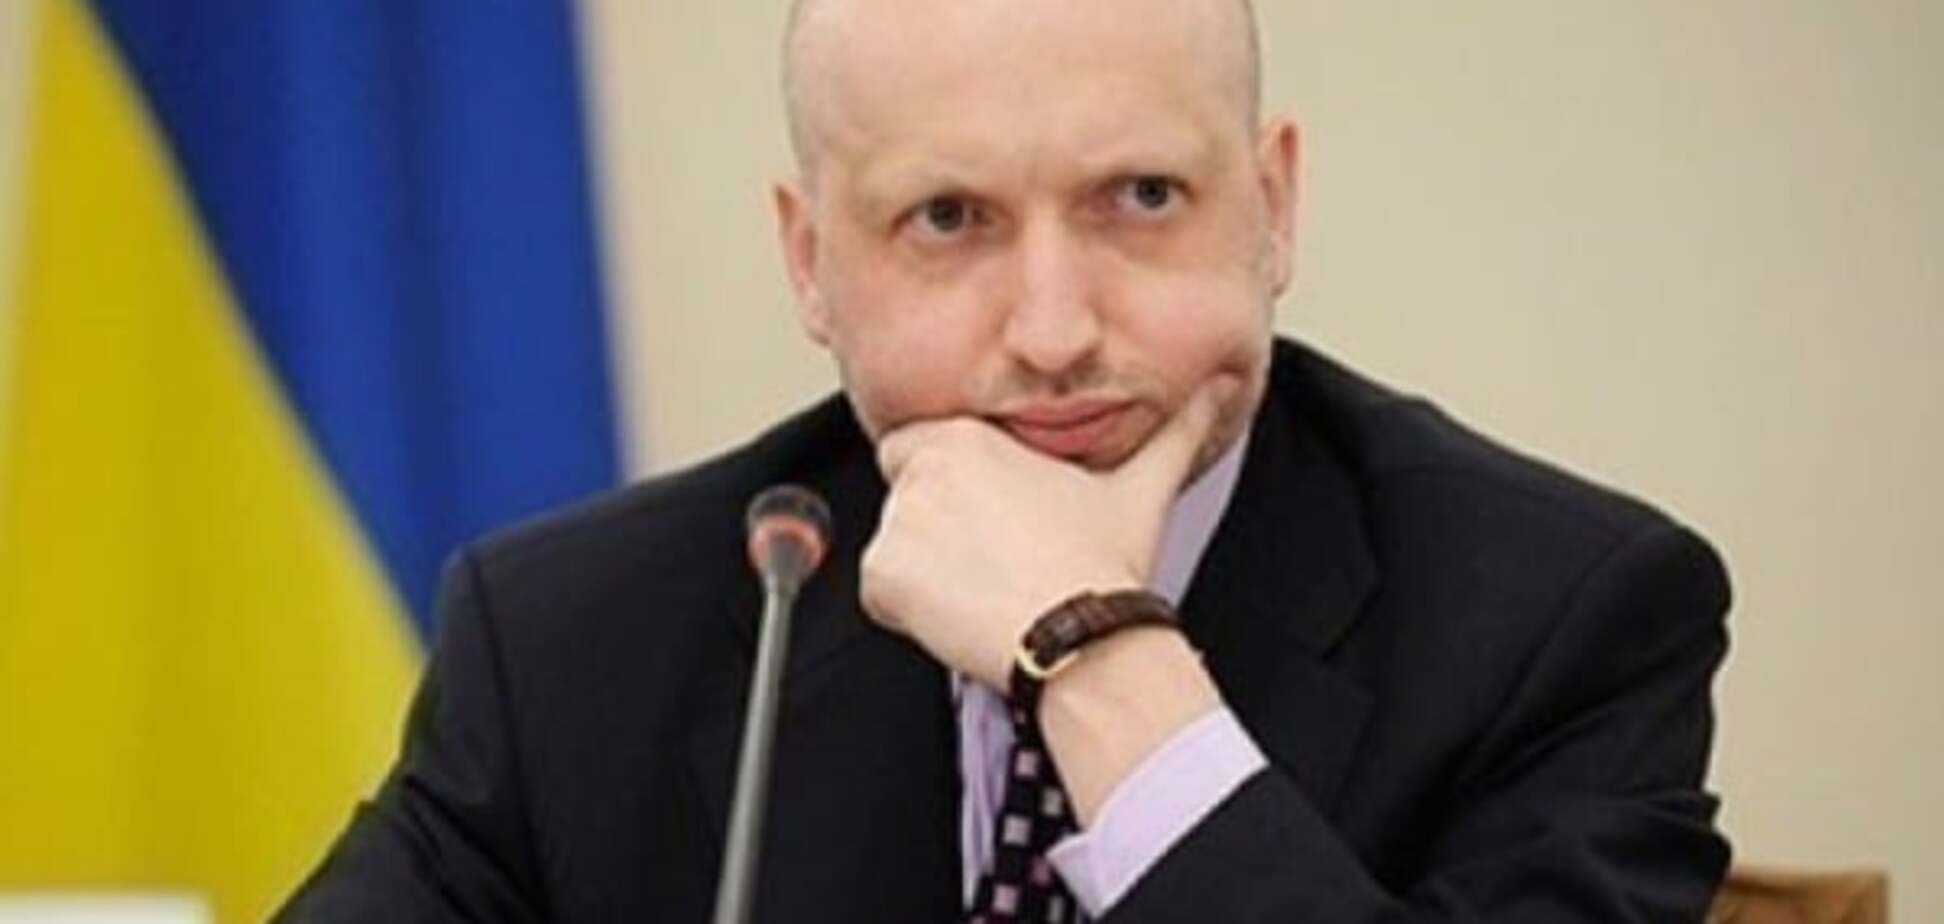 Очередная провокация: Турчинов прокомментировал разговоры о его переходе в МВД